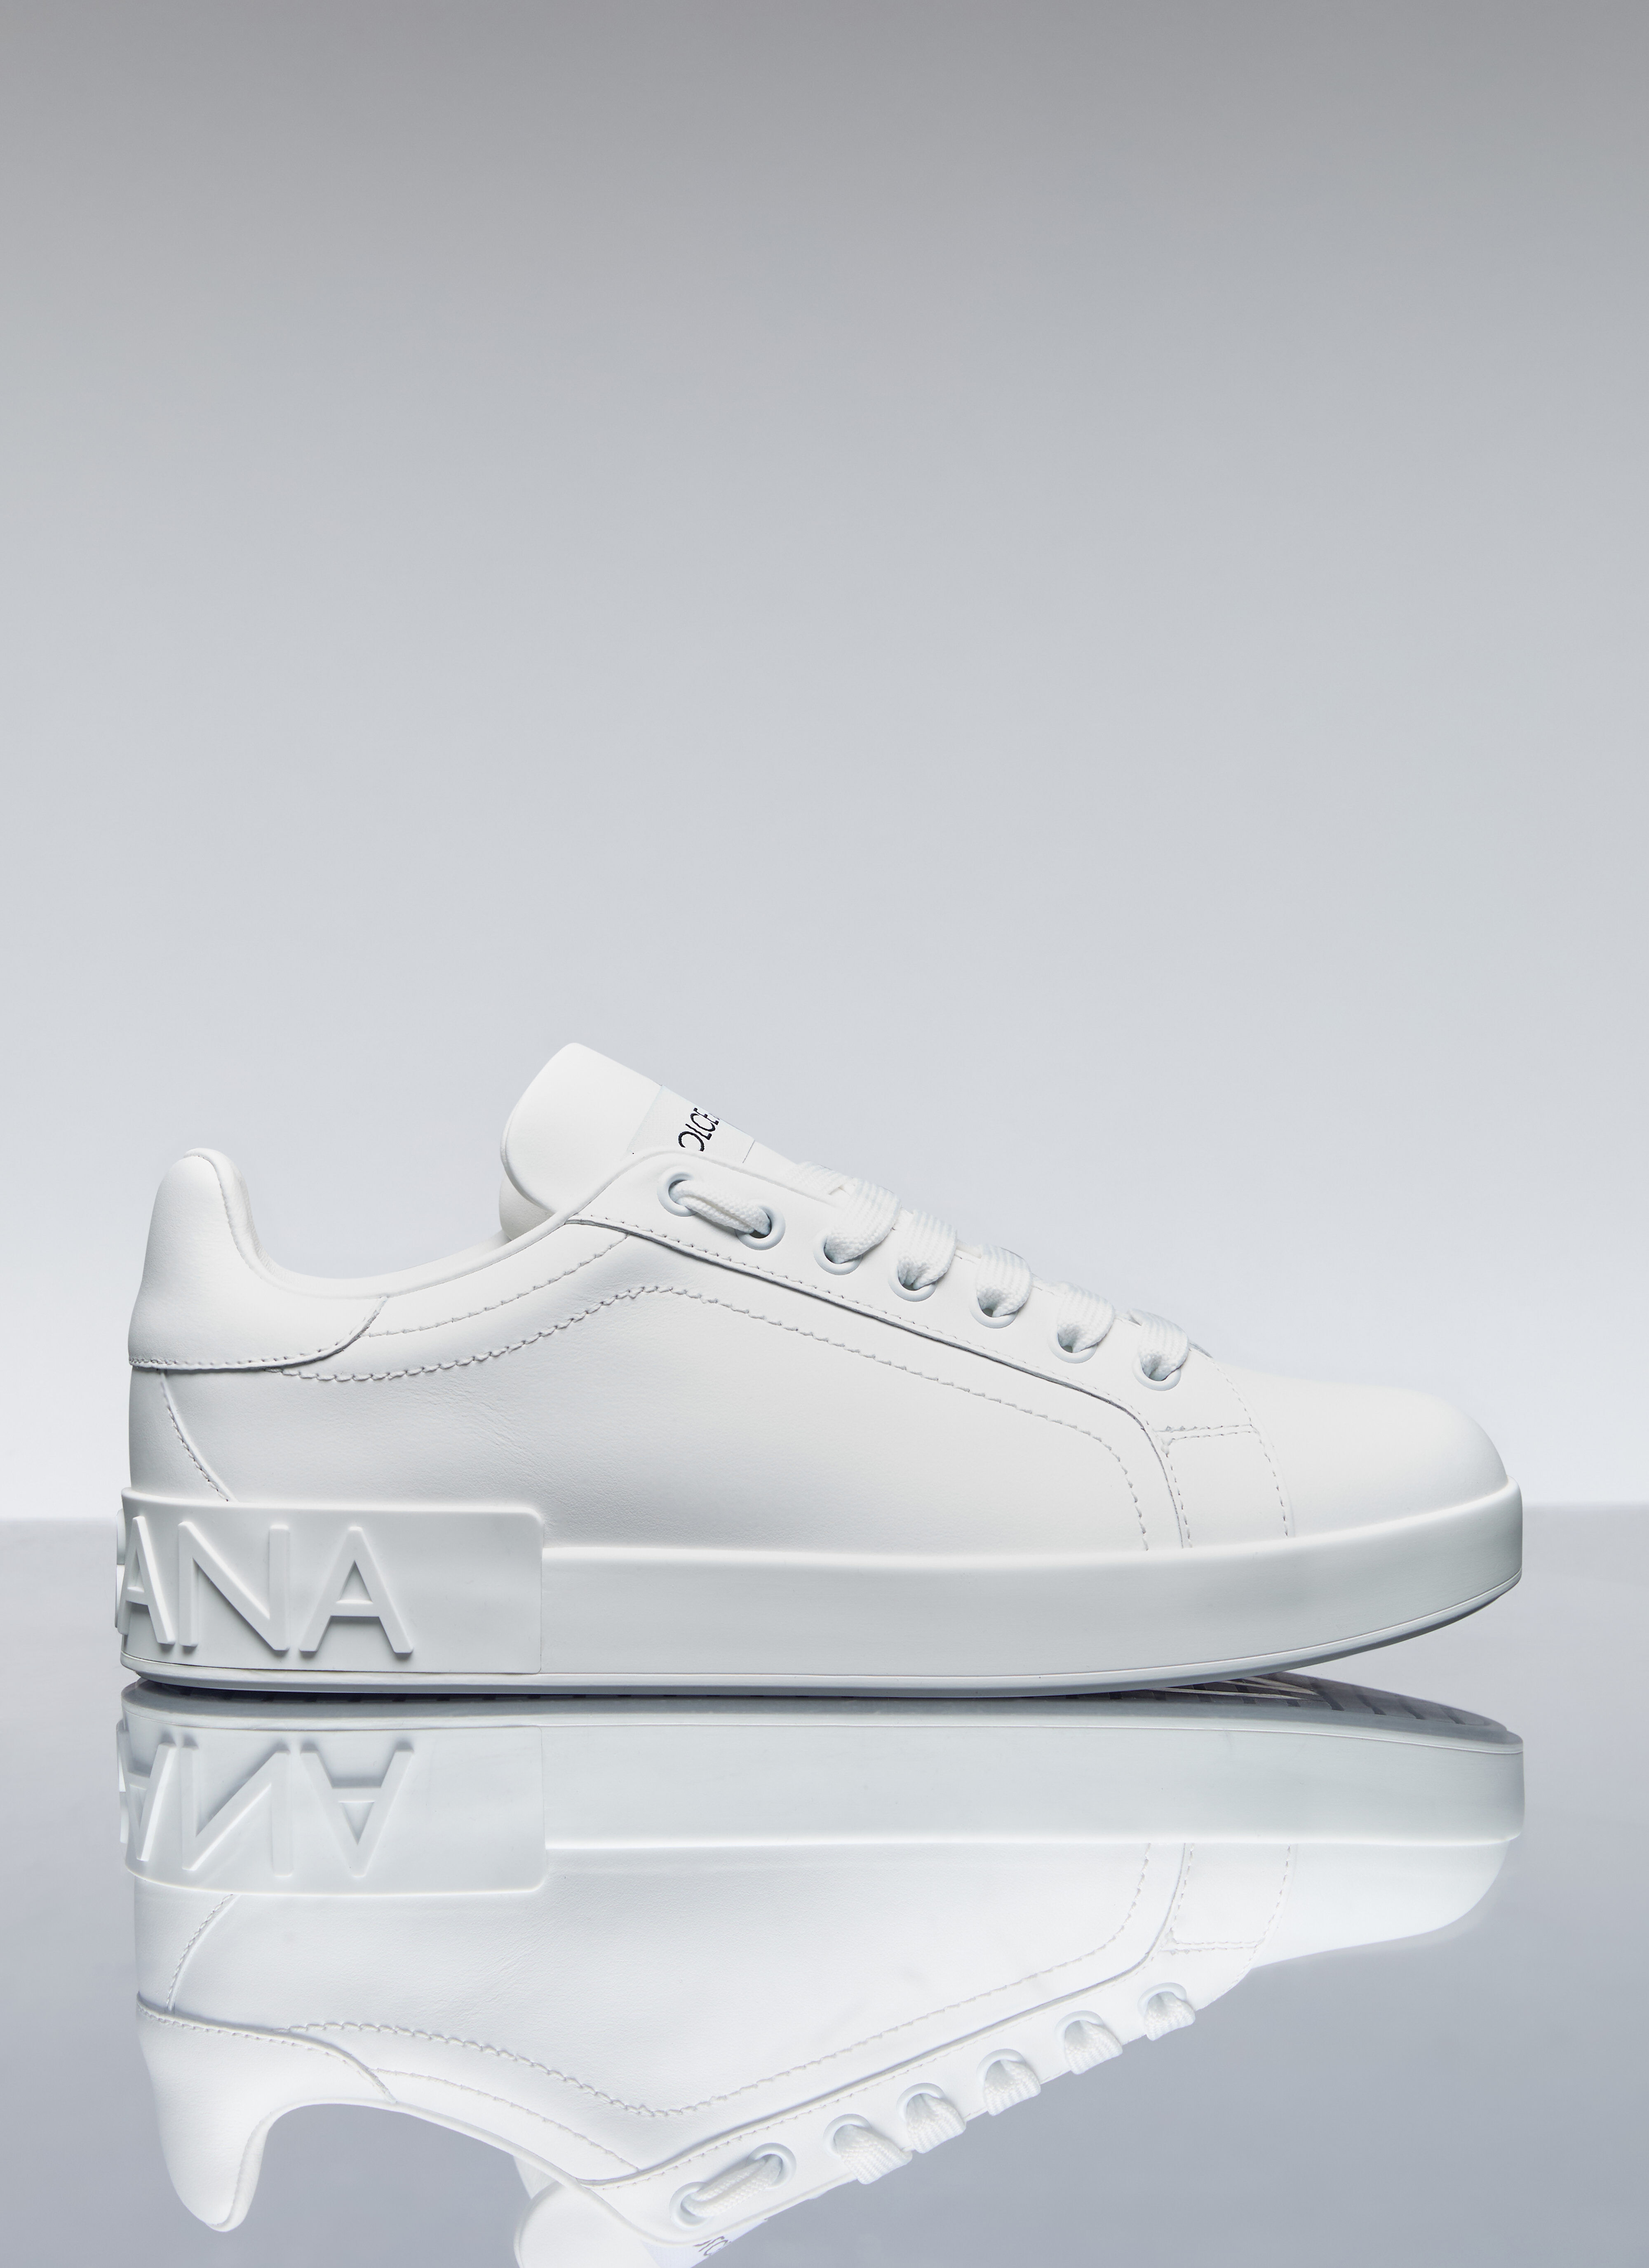 Comme des Garçons Homme Plus x Nike Portofino Sneakers White cgh0356003